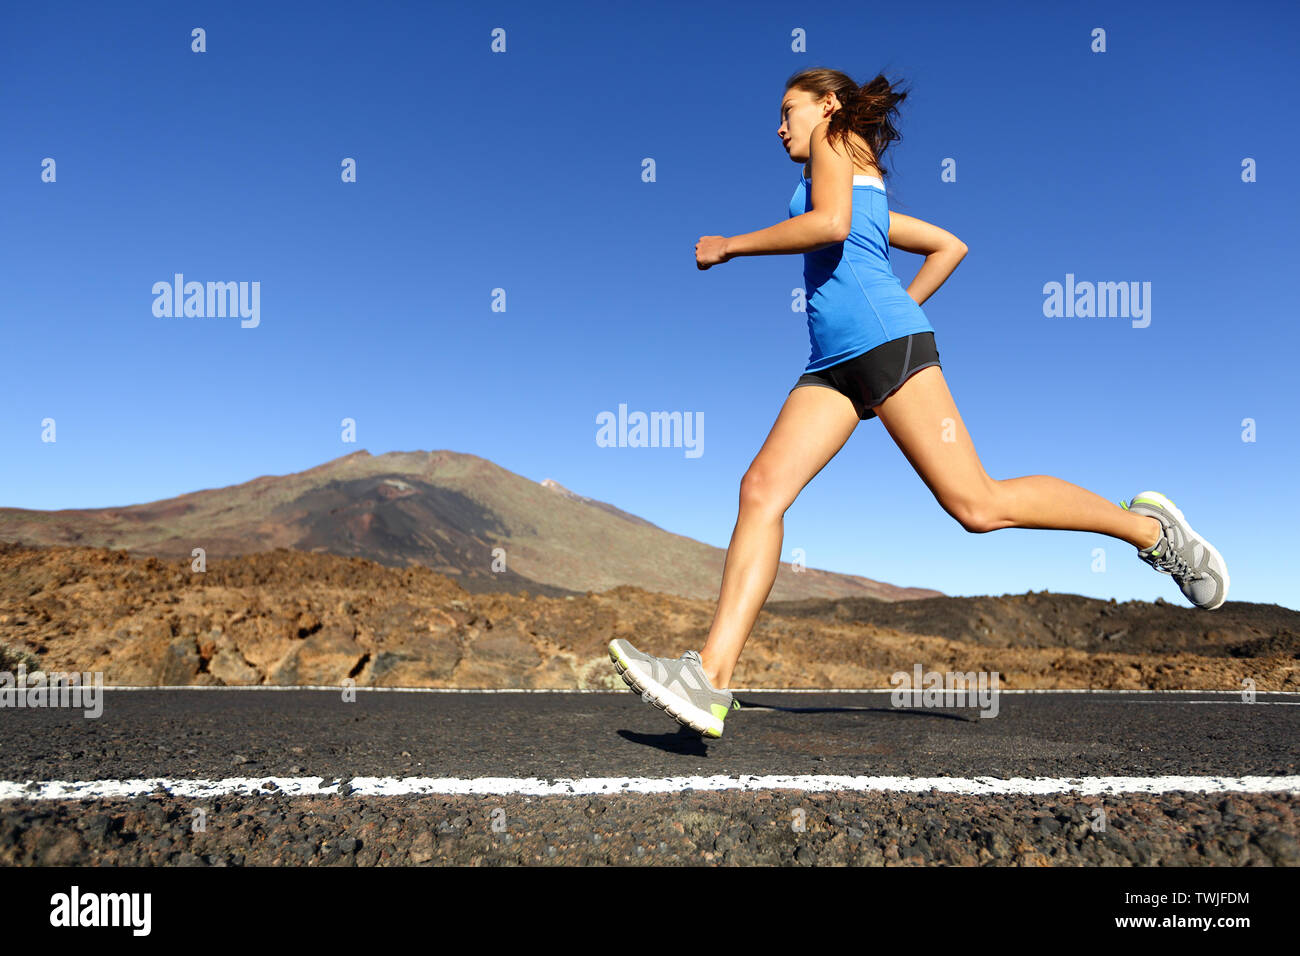 Sprinten, Frau - Läuferin Training im Freien joggen auf Mountain Road in atemberaubender Landschaft Natur. Passen schönen Fitness Modell arbeiten für Marathon im Sommer im Freien. Stockfoto